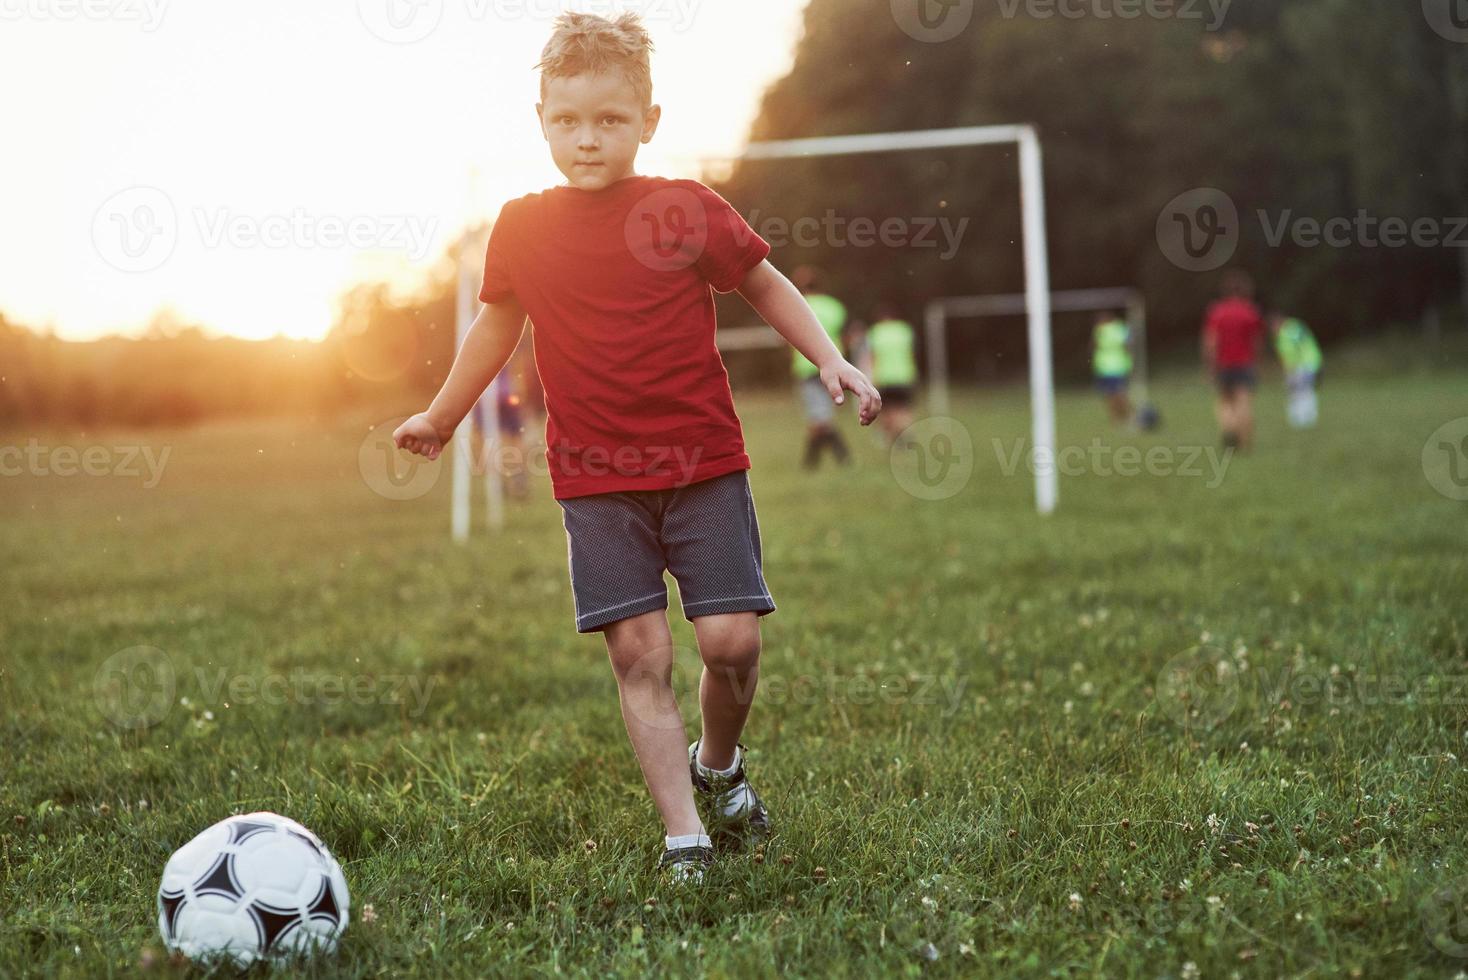 sentirse emocionado. niño juega al fútbol en un día soleado y cálido y va a marcar un gol foto